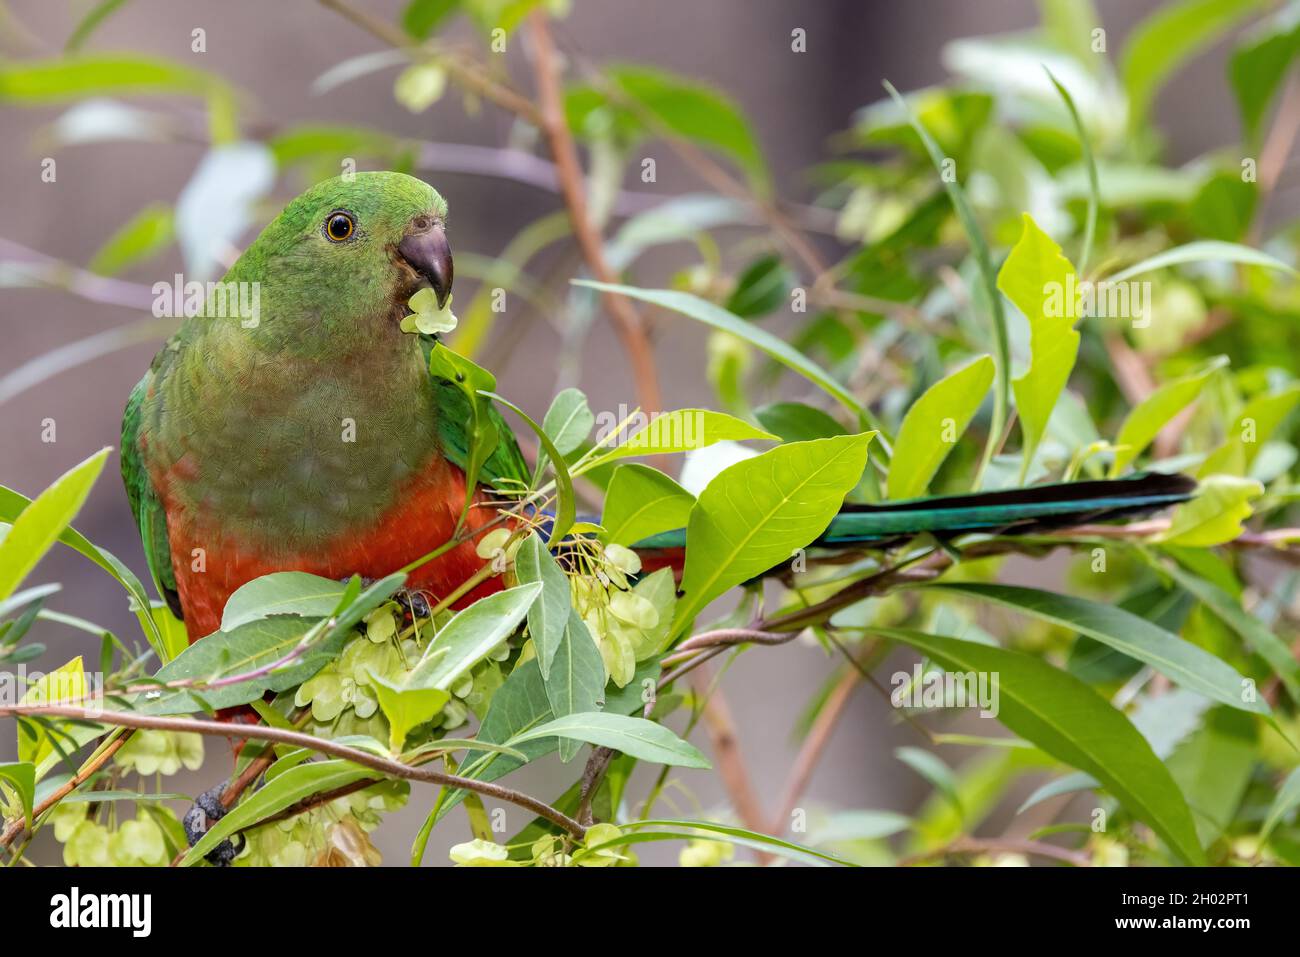 Female Australian King Parrot feeding on Hop Bush seeds Stock Photo